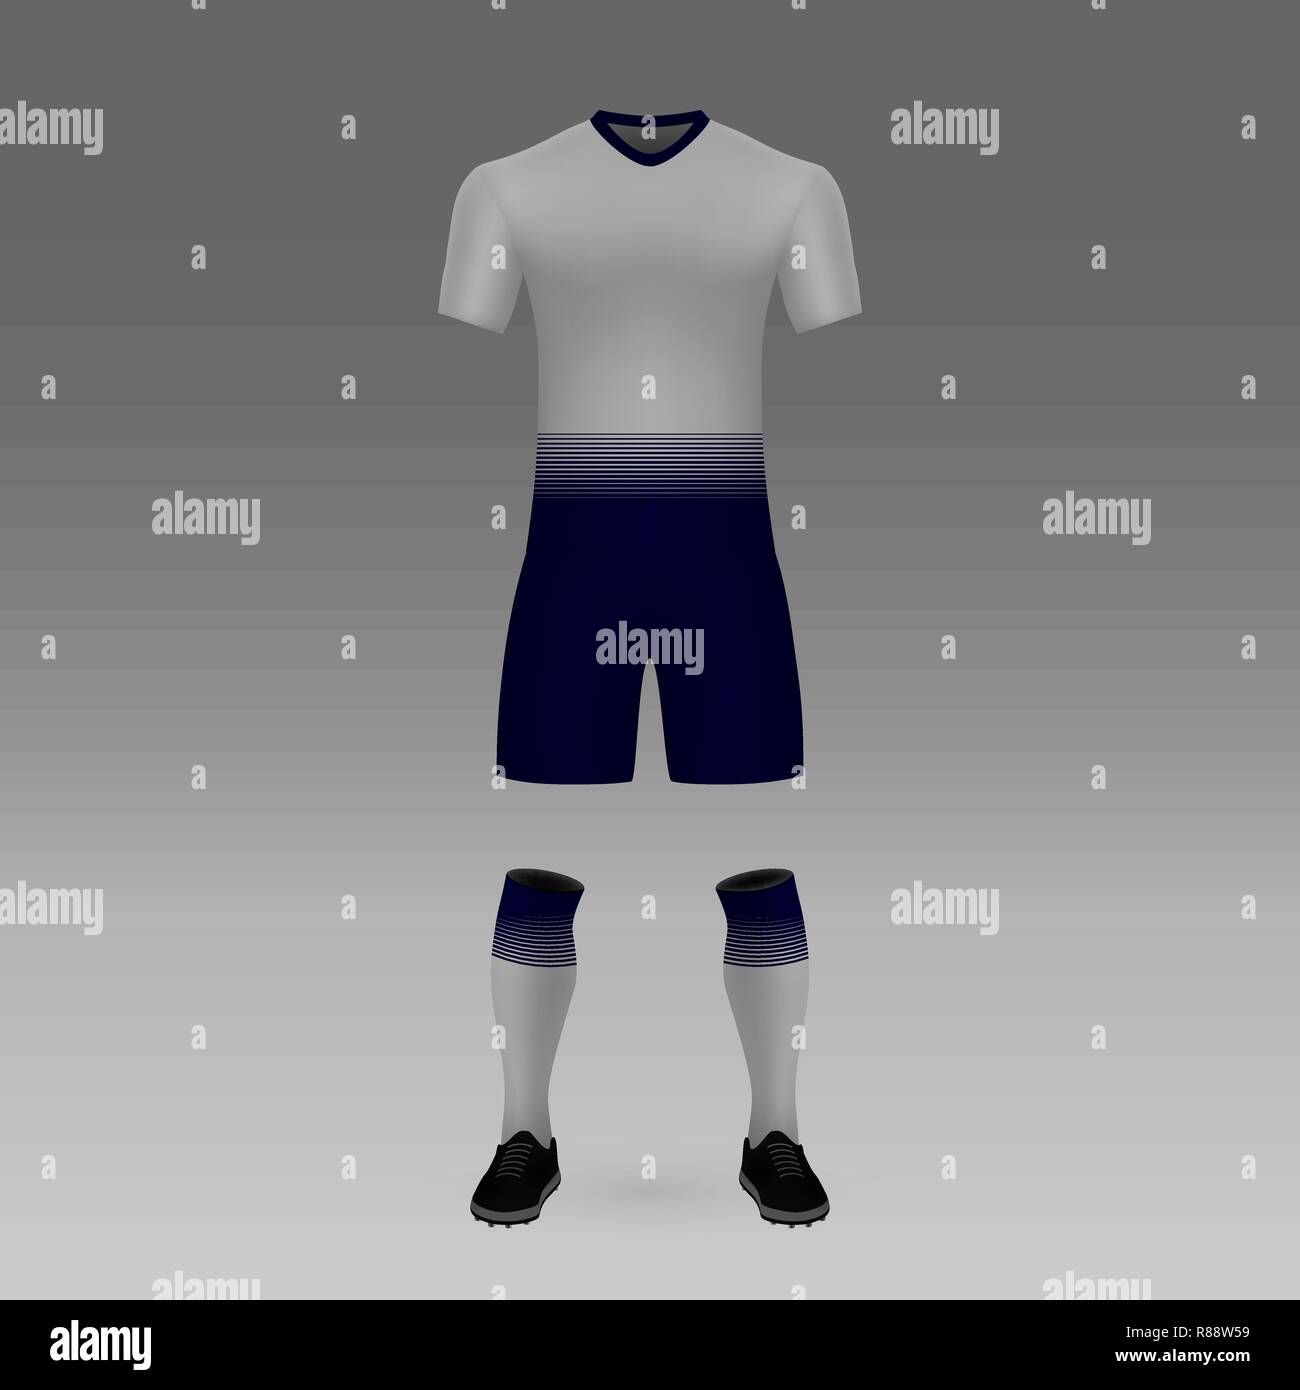 Kit de football de Tottenham, shirt modèle pour l'accueil. Vector illustration Illustration de Vecteur